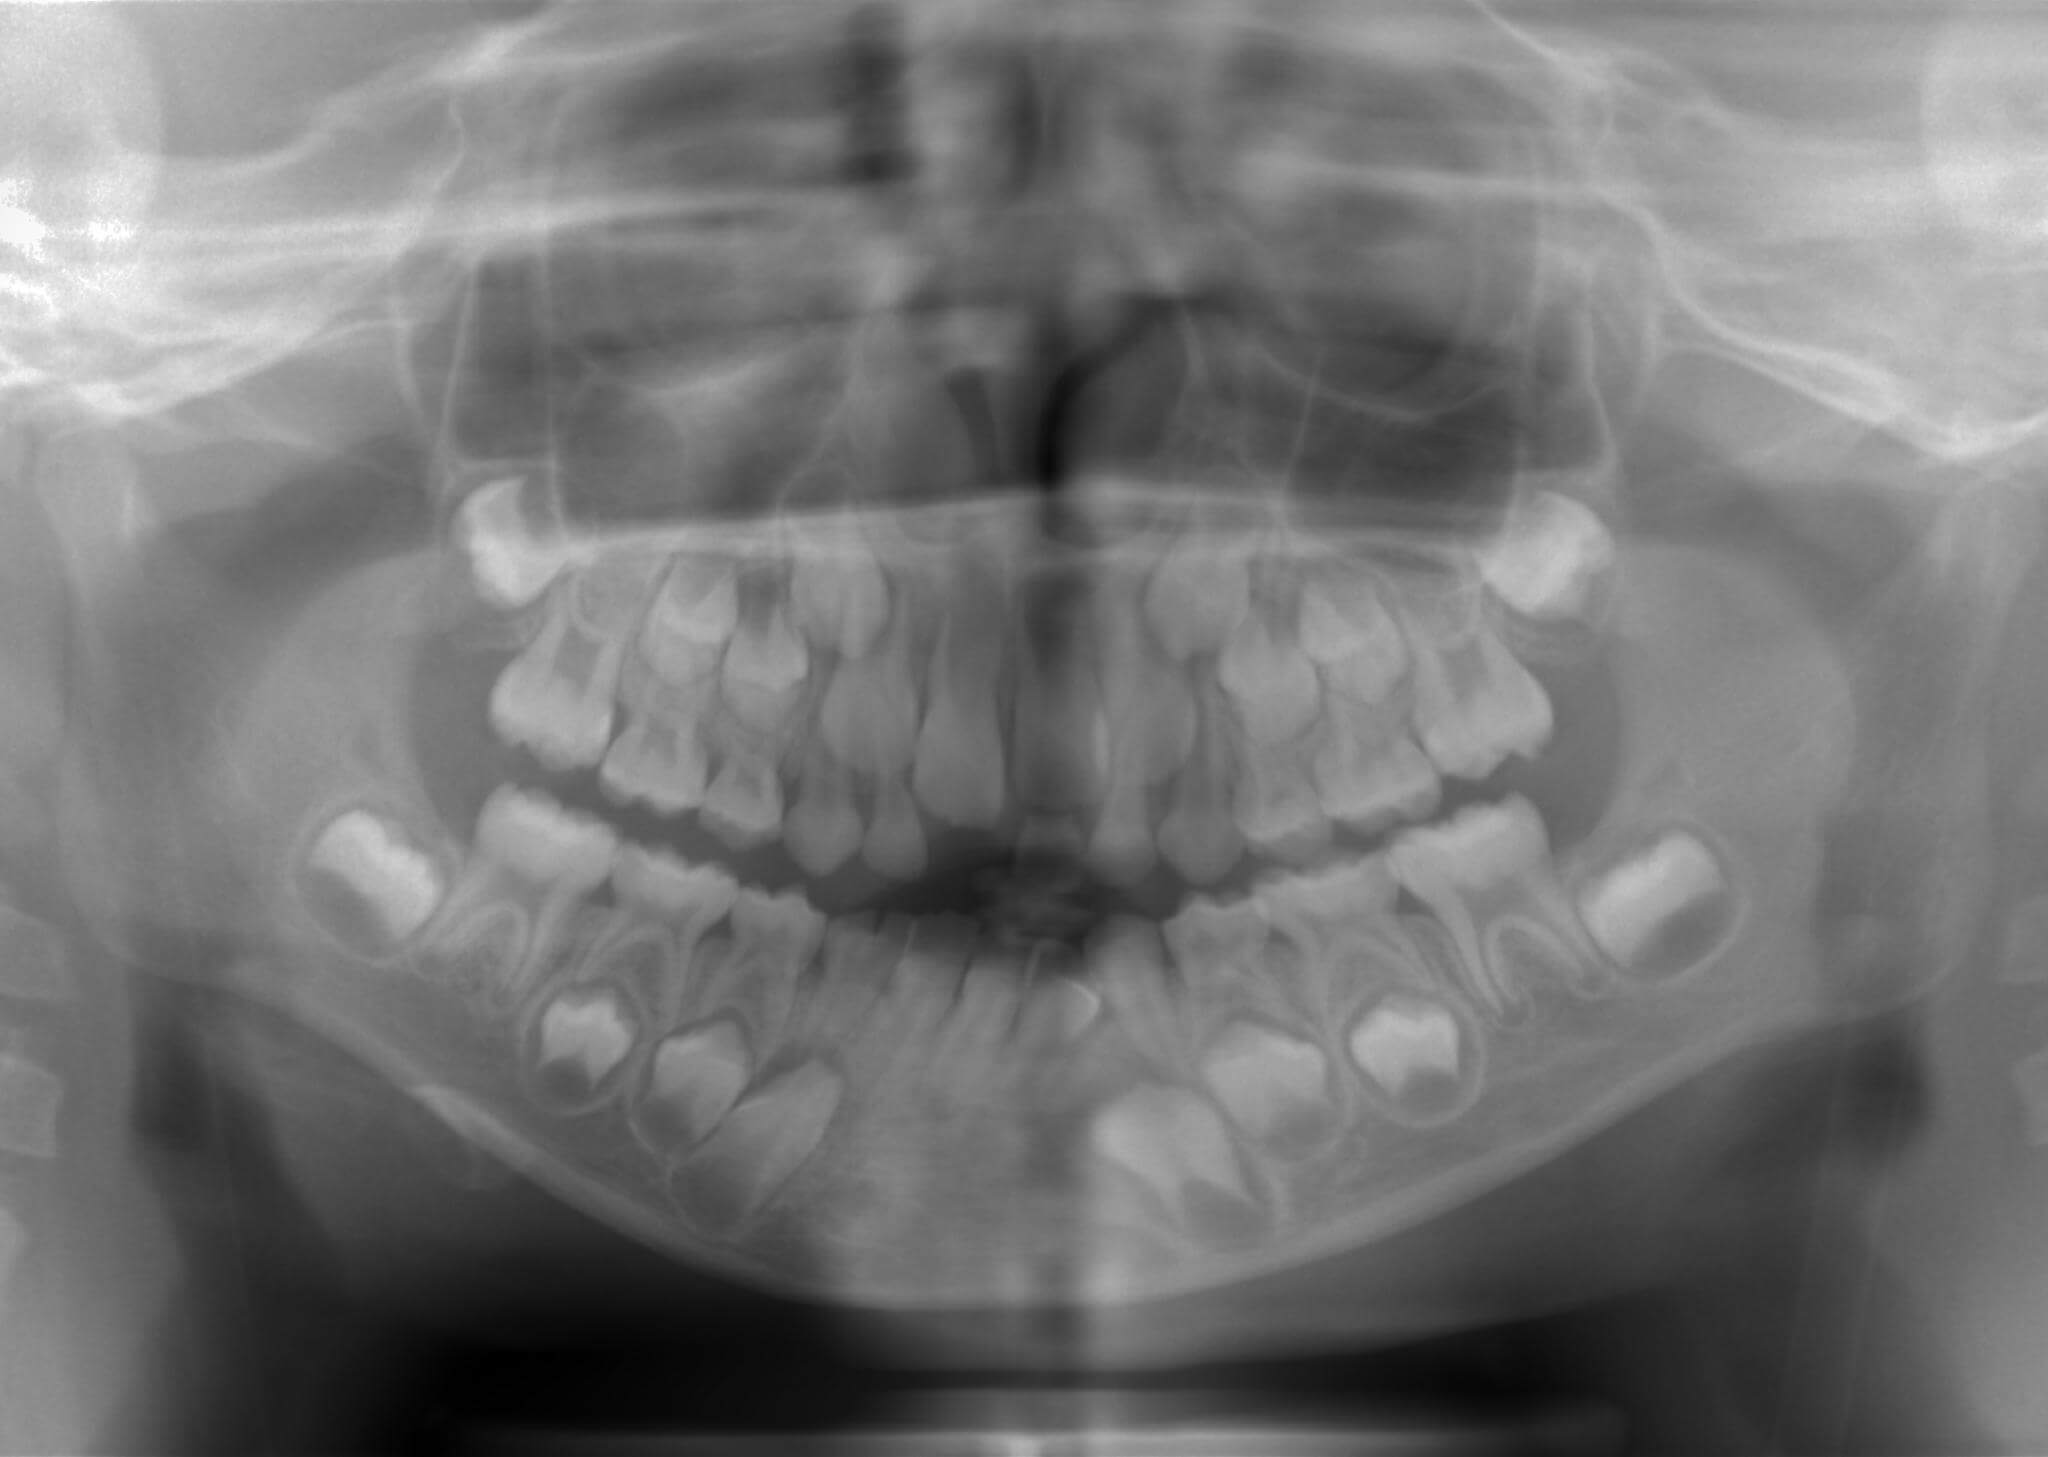 右下の乳歯が癒合歯で永久歯は一本欠損している。